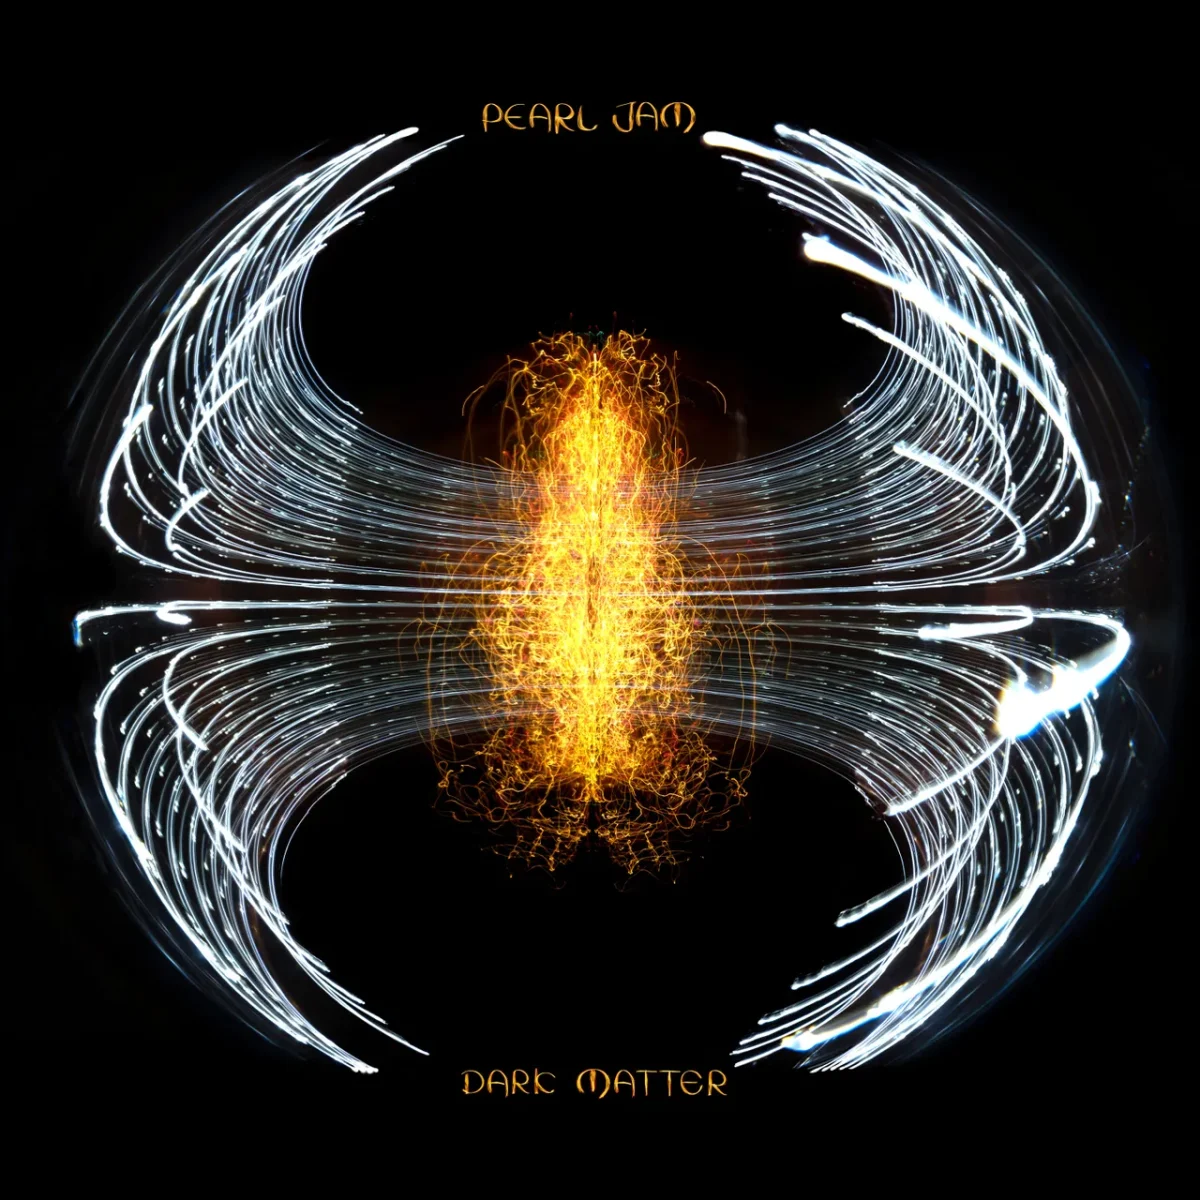 Dark Matter: Pearl Jam’s Latest Album